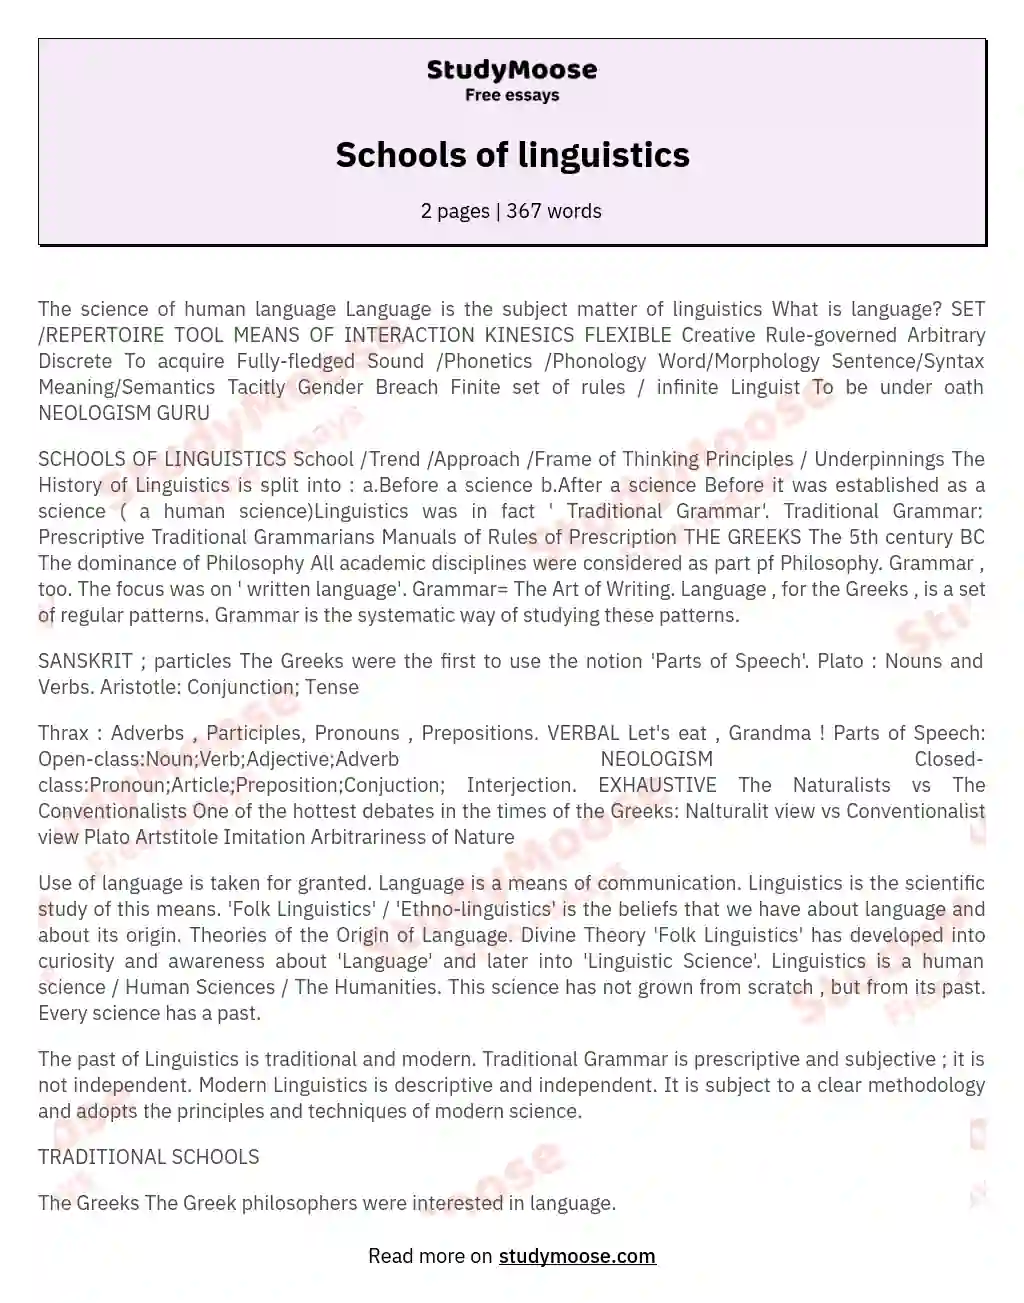 Schools of linguistics essay